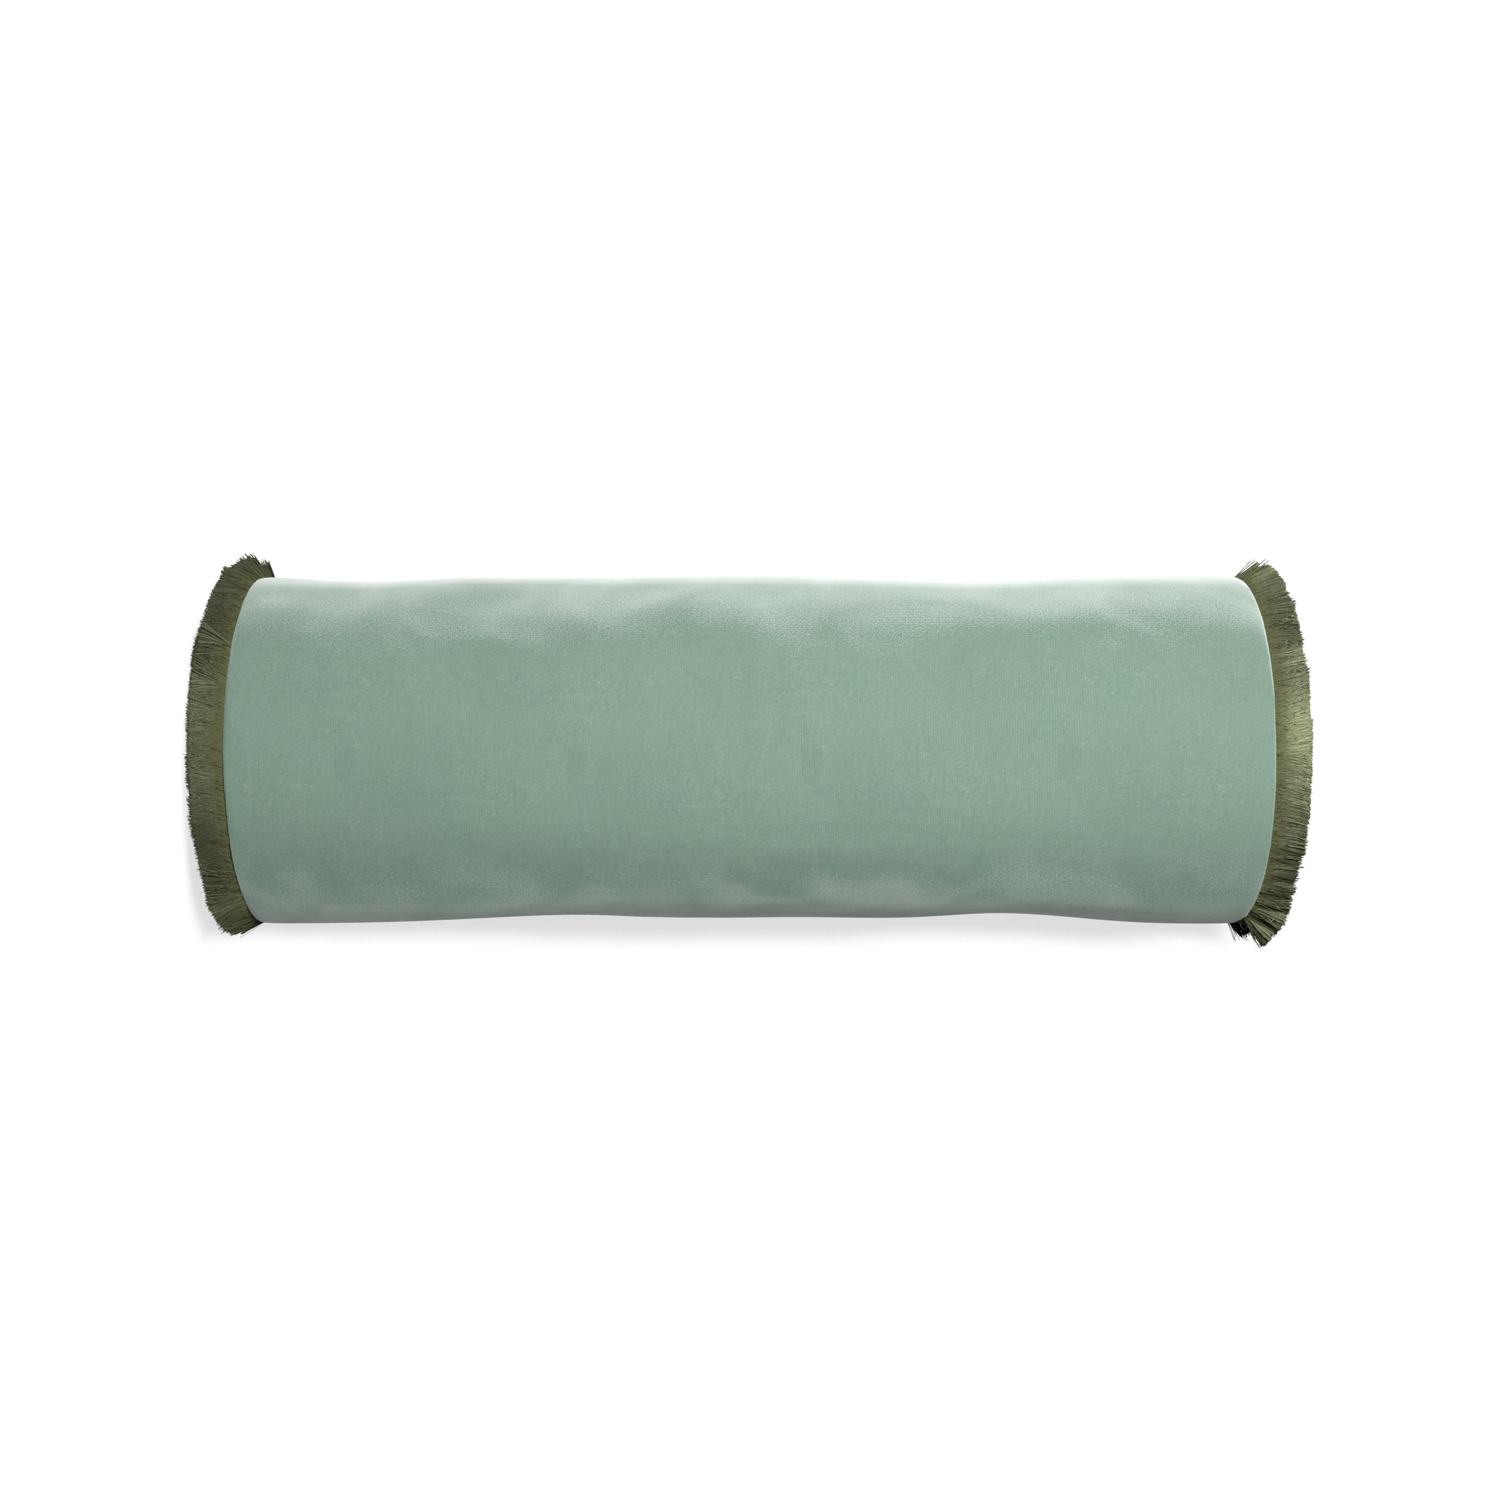 bolster blue green velvet pillow with sage green fringe